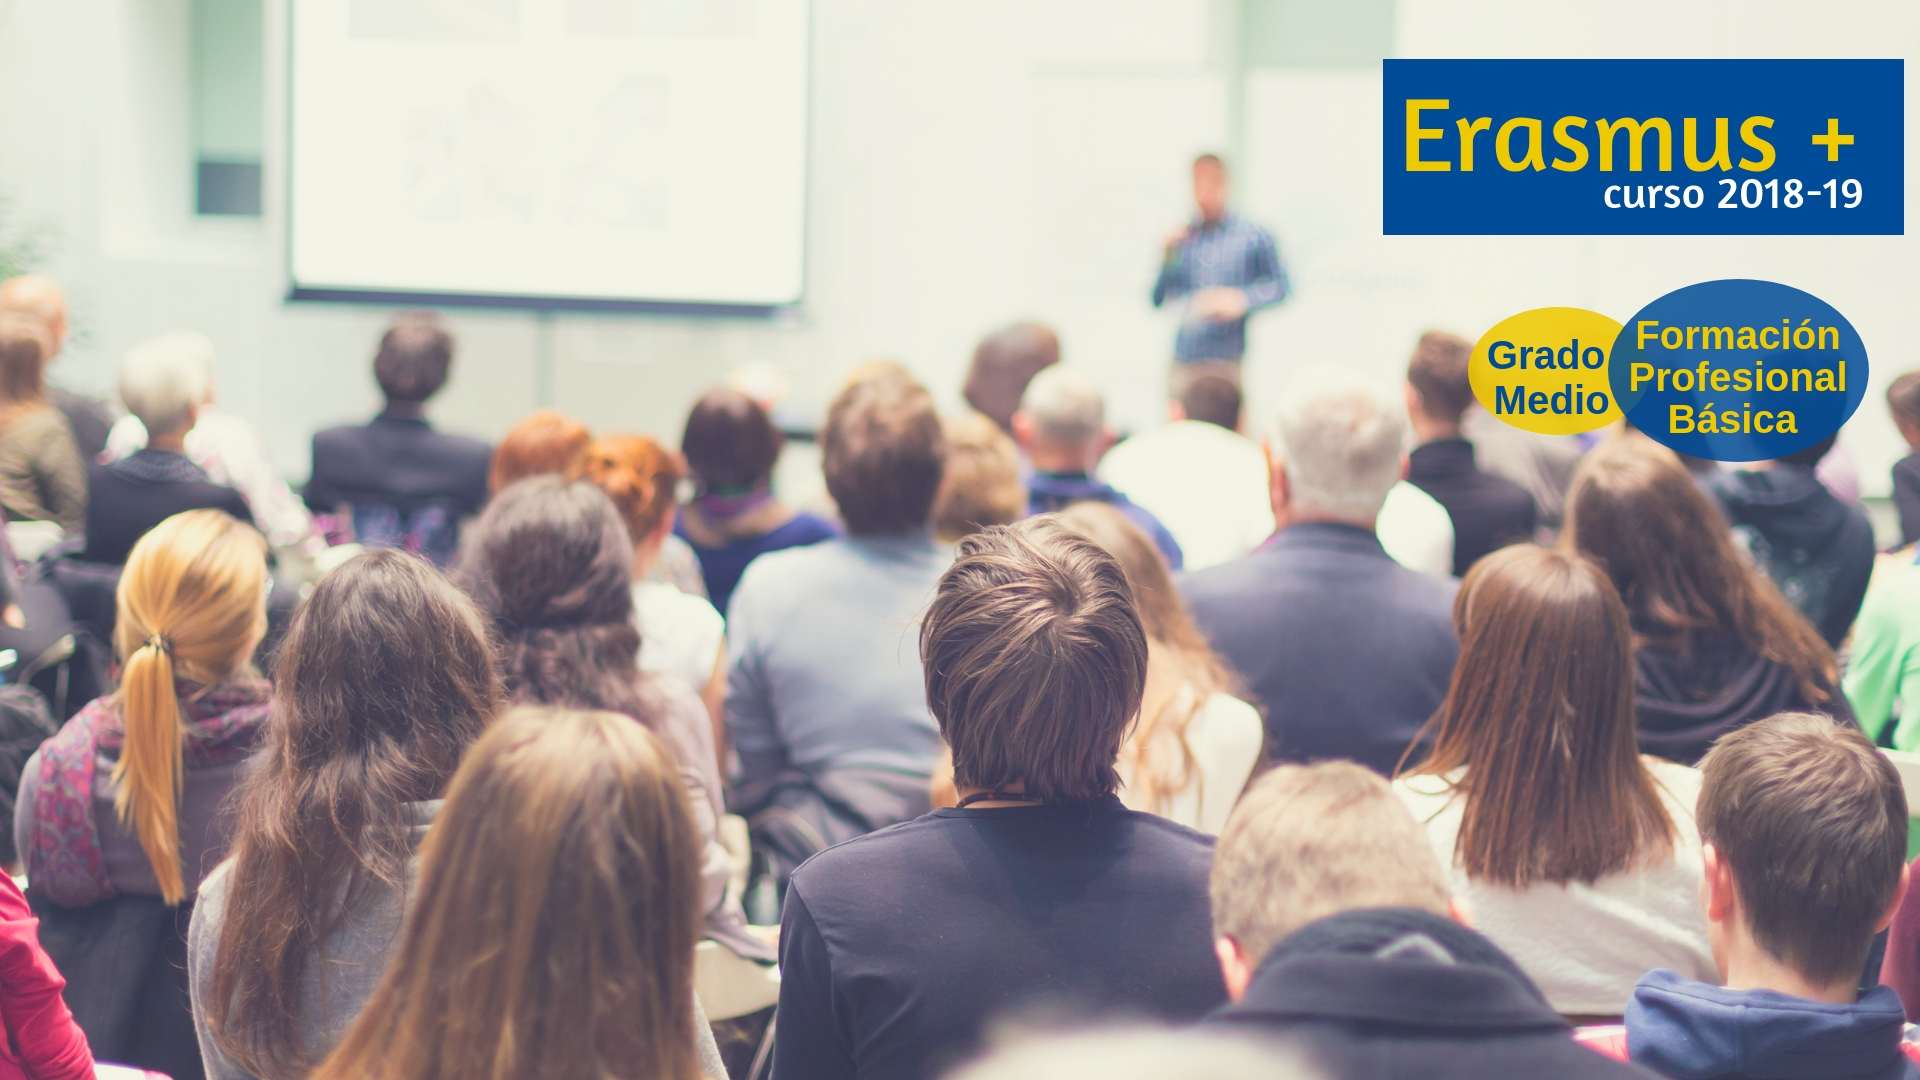 La Escuela Profesional oferta movilidades Erasmus + para el curso 2018/2019 en Formación Profesional